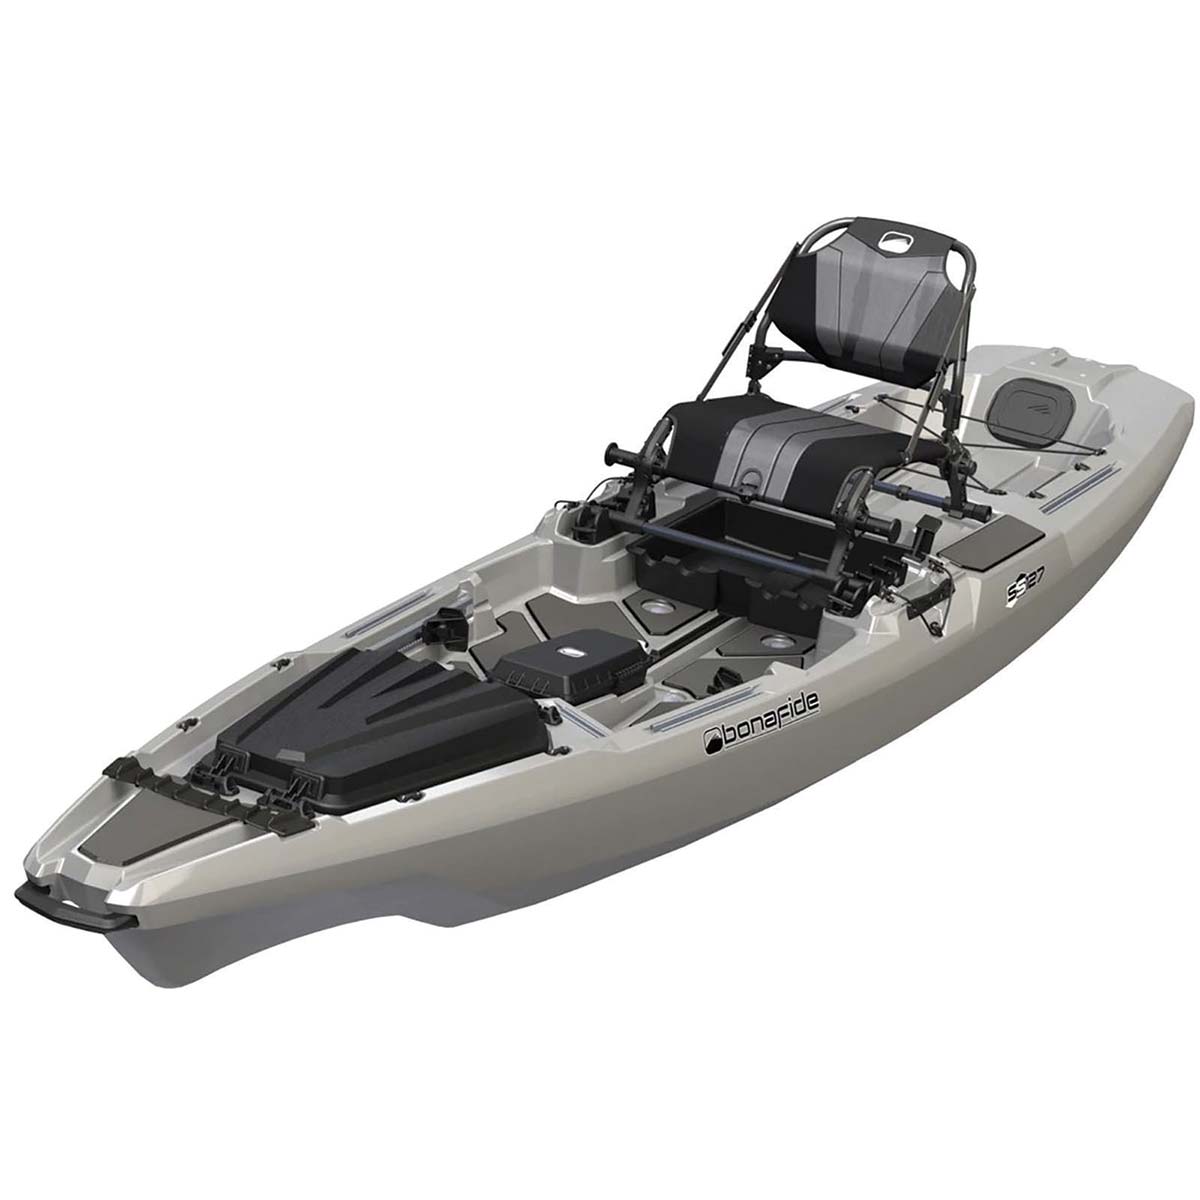 Prowler 13 Angler Reviews - Ocean Kayak, Buyers' Guide